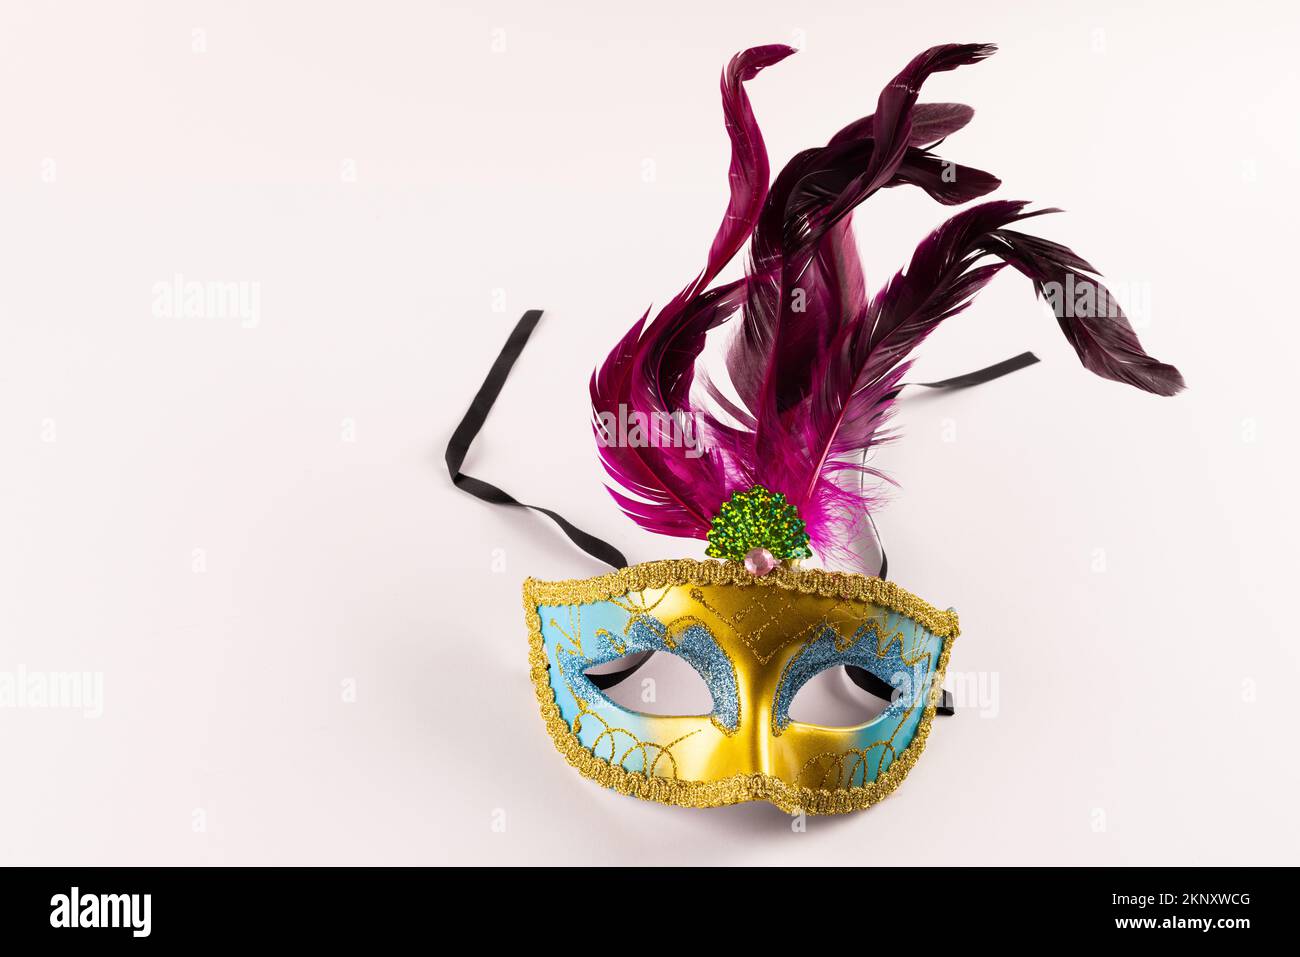 Composition de mardi gras coloré masque de carnaval avec des plumes sur fond blanc avec espace de copie Banque D'Images